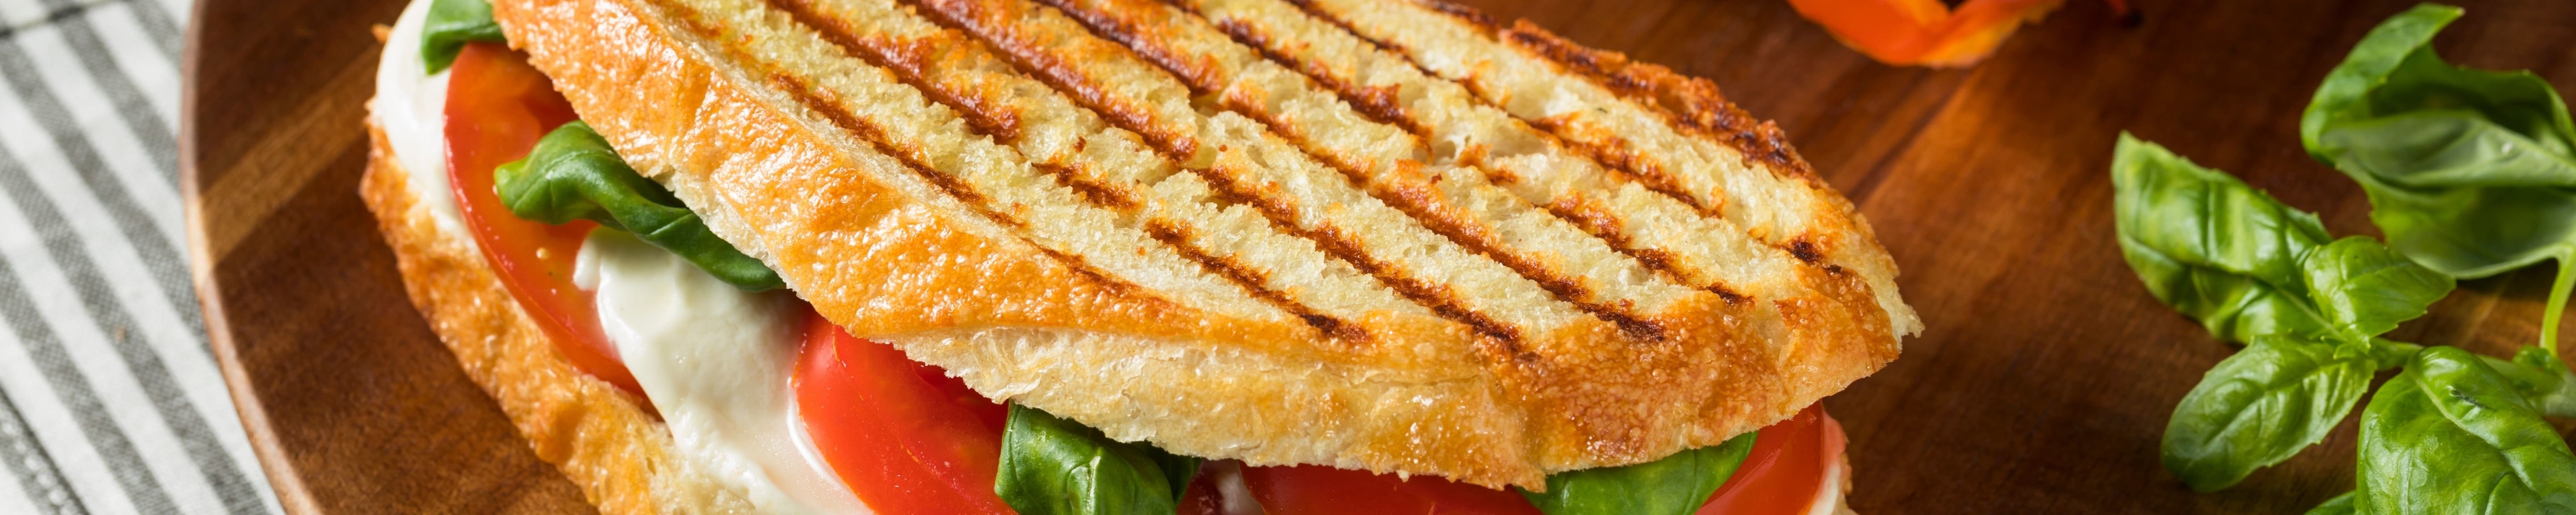 Gegrilltes Sandwich mit Tomaten und Mozzarella